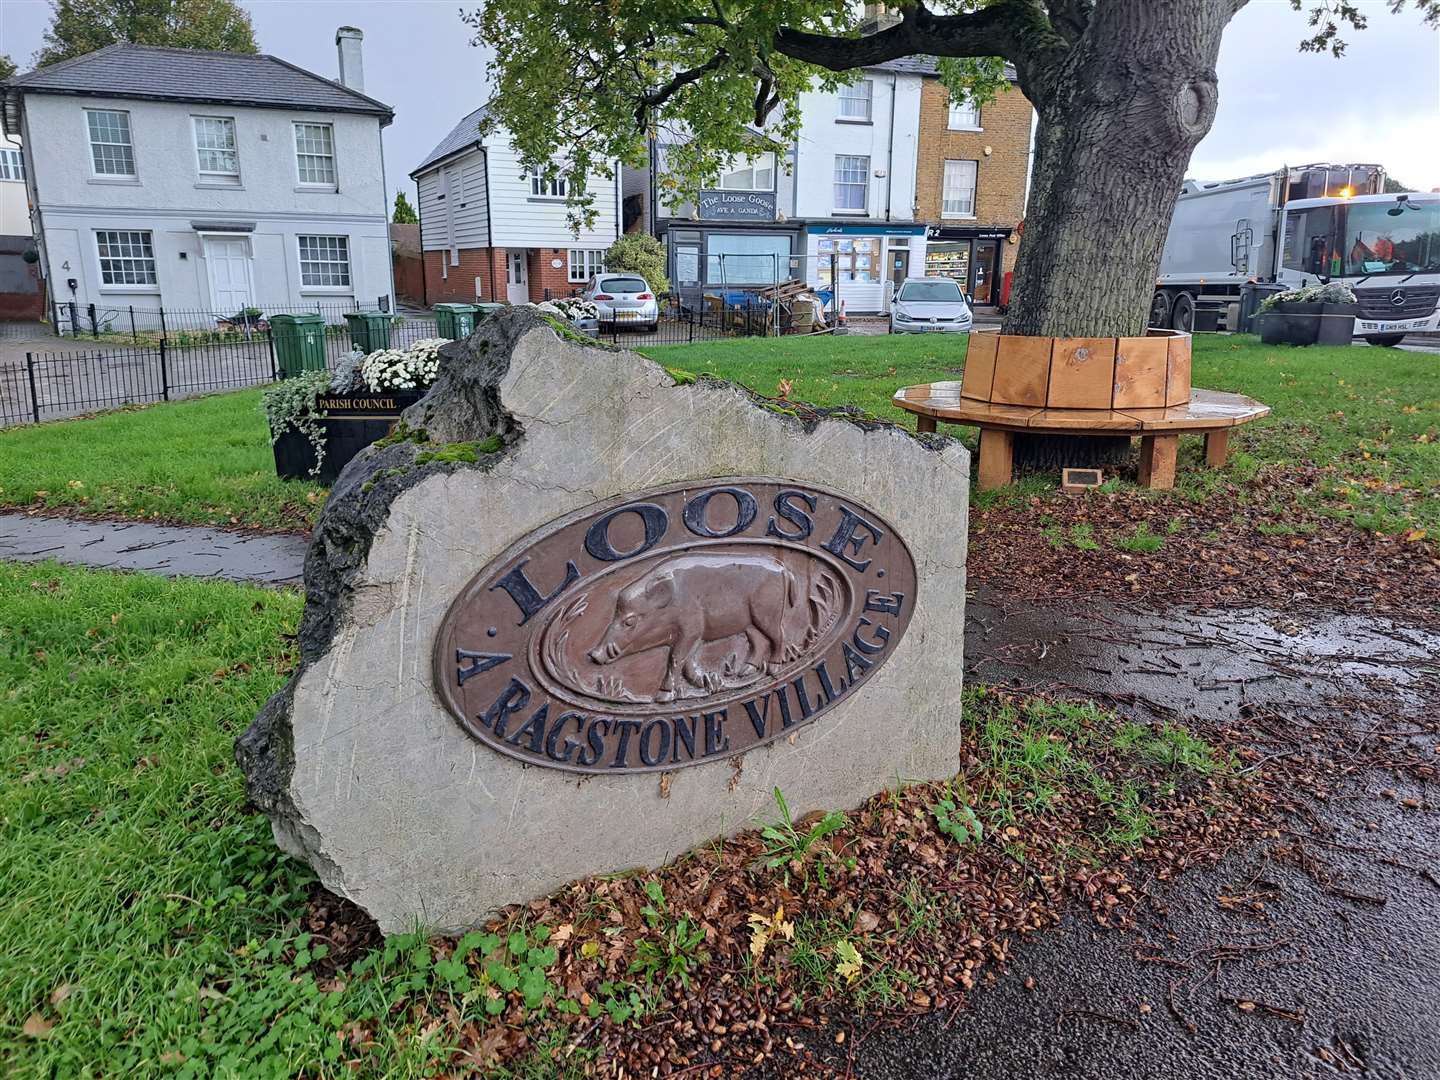 Loose Village sign